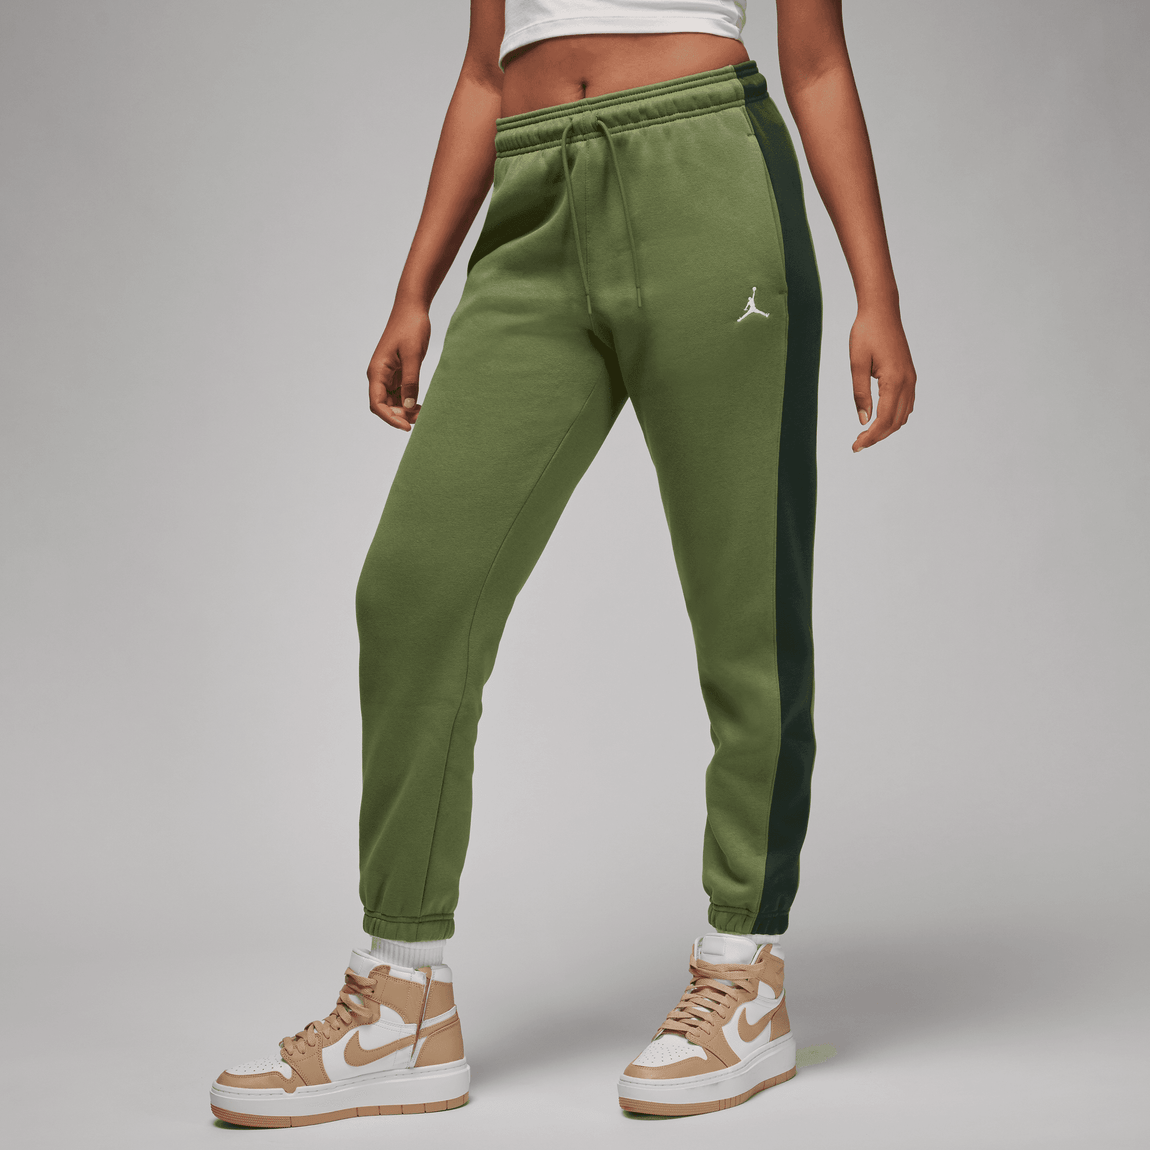 Women's Nike Jordan Flight Women's Fleece Pants Joggers Plus 2X Gray  Sweatpants